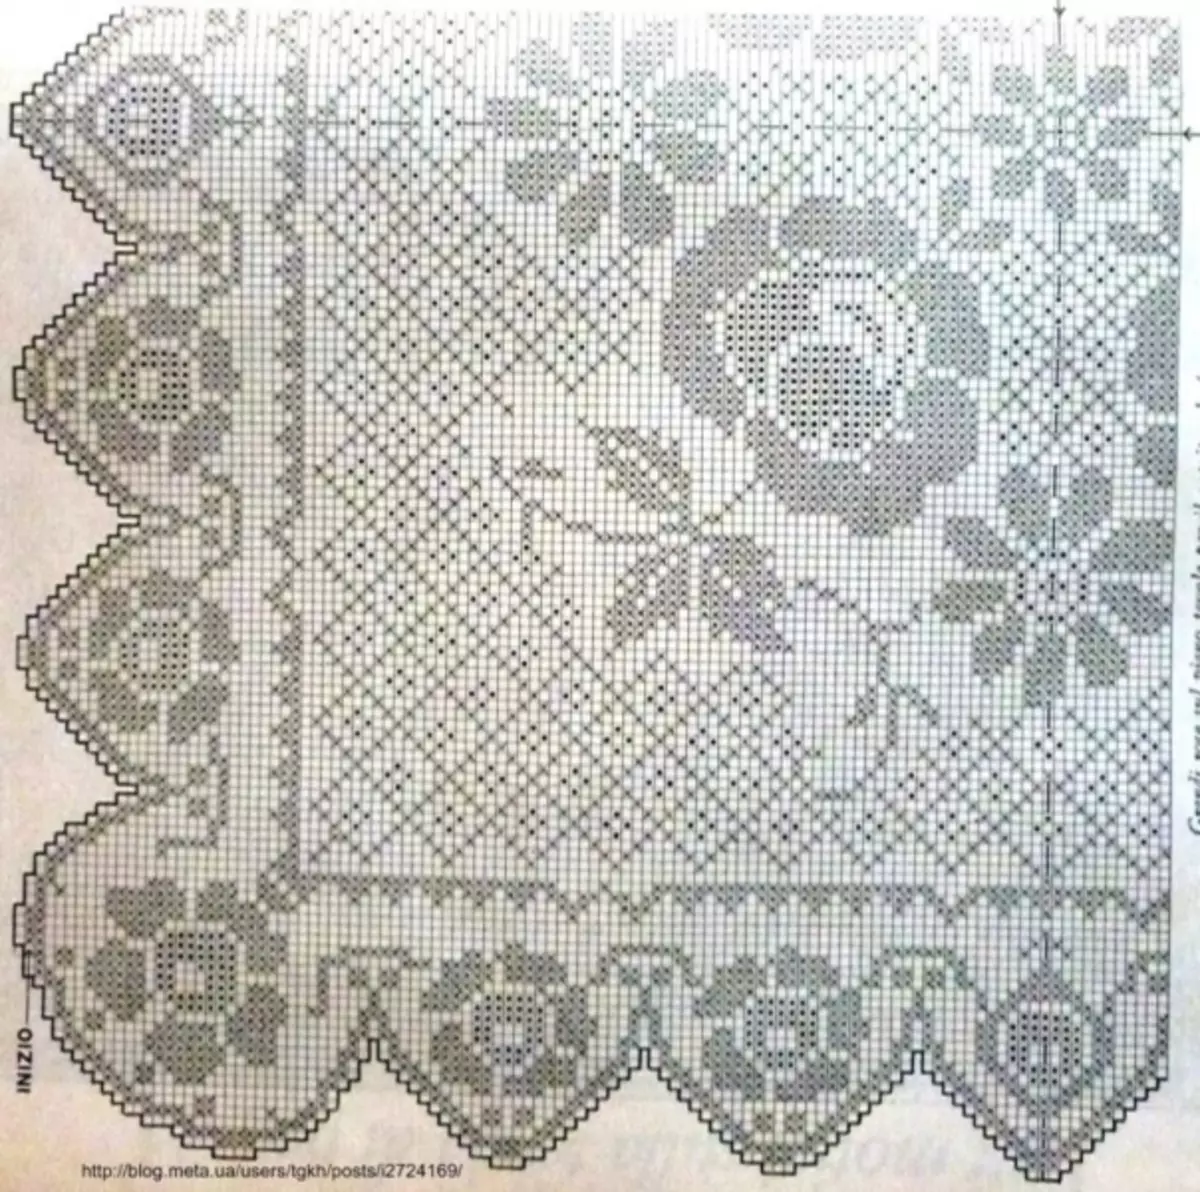 Đề án của một chiếc khăn trải bàn hình chữ nhật với một mô tả cho người mới bắt đầu